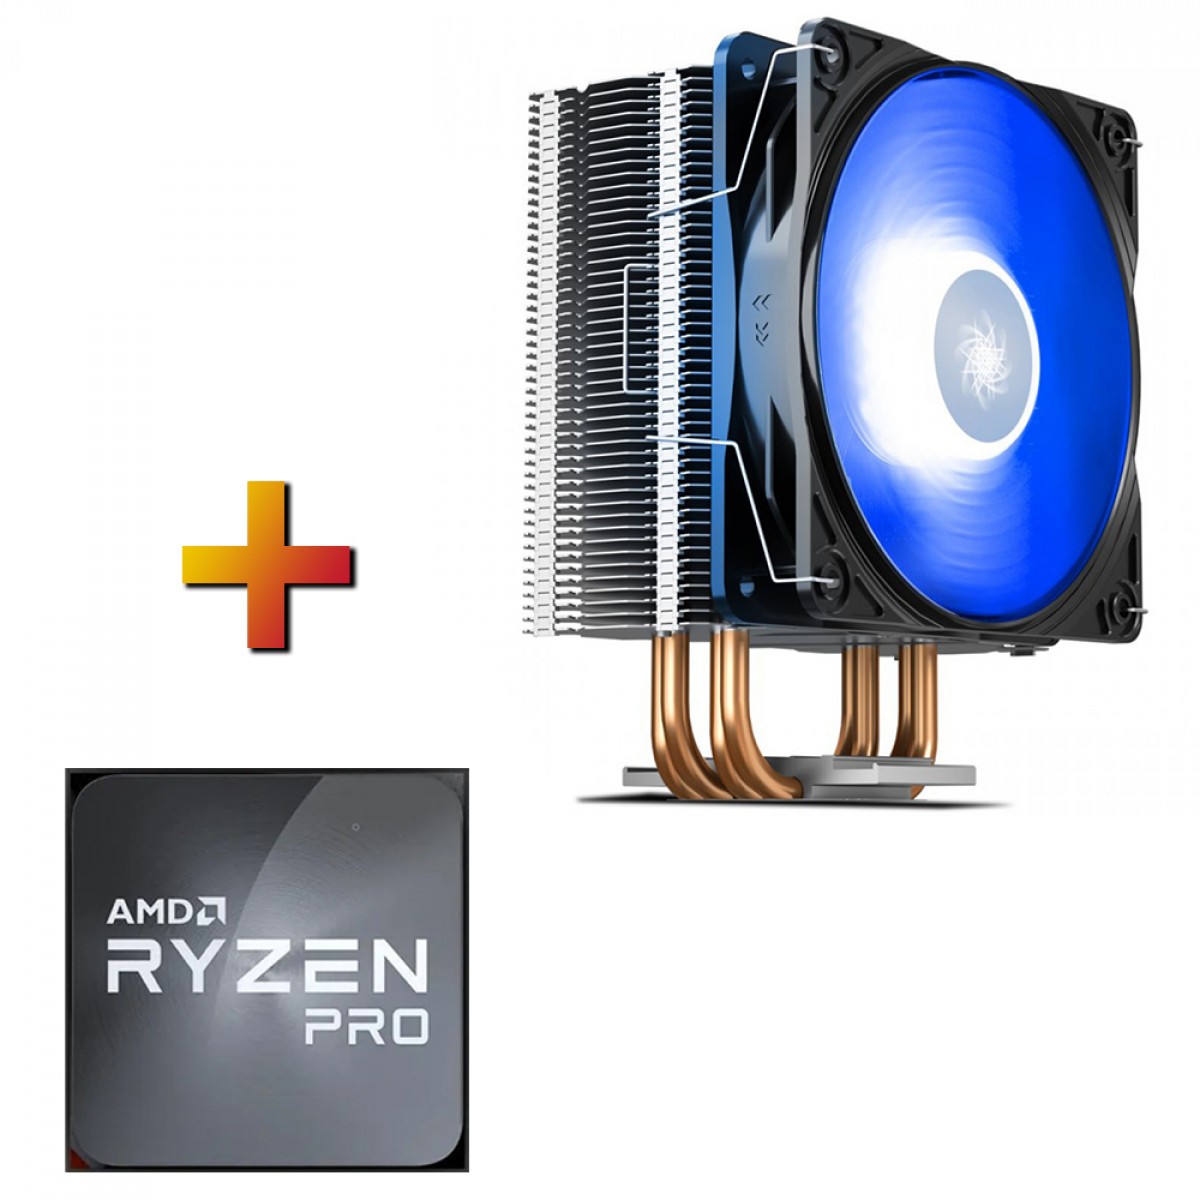 Processador AMD Ryzen 5 PRO 2400GE 3.2GHz + Cooler DeepCool Gammaxx 400 V2 Blue